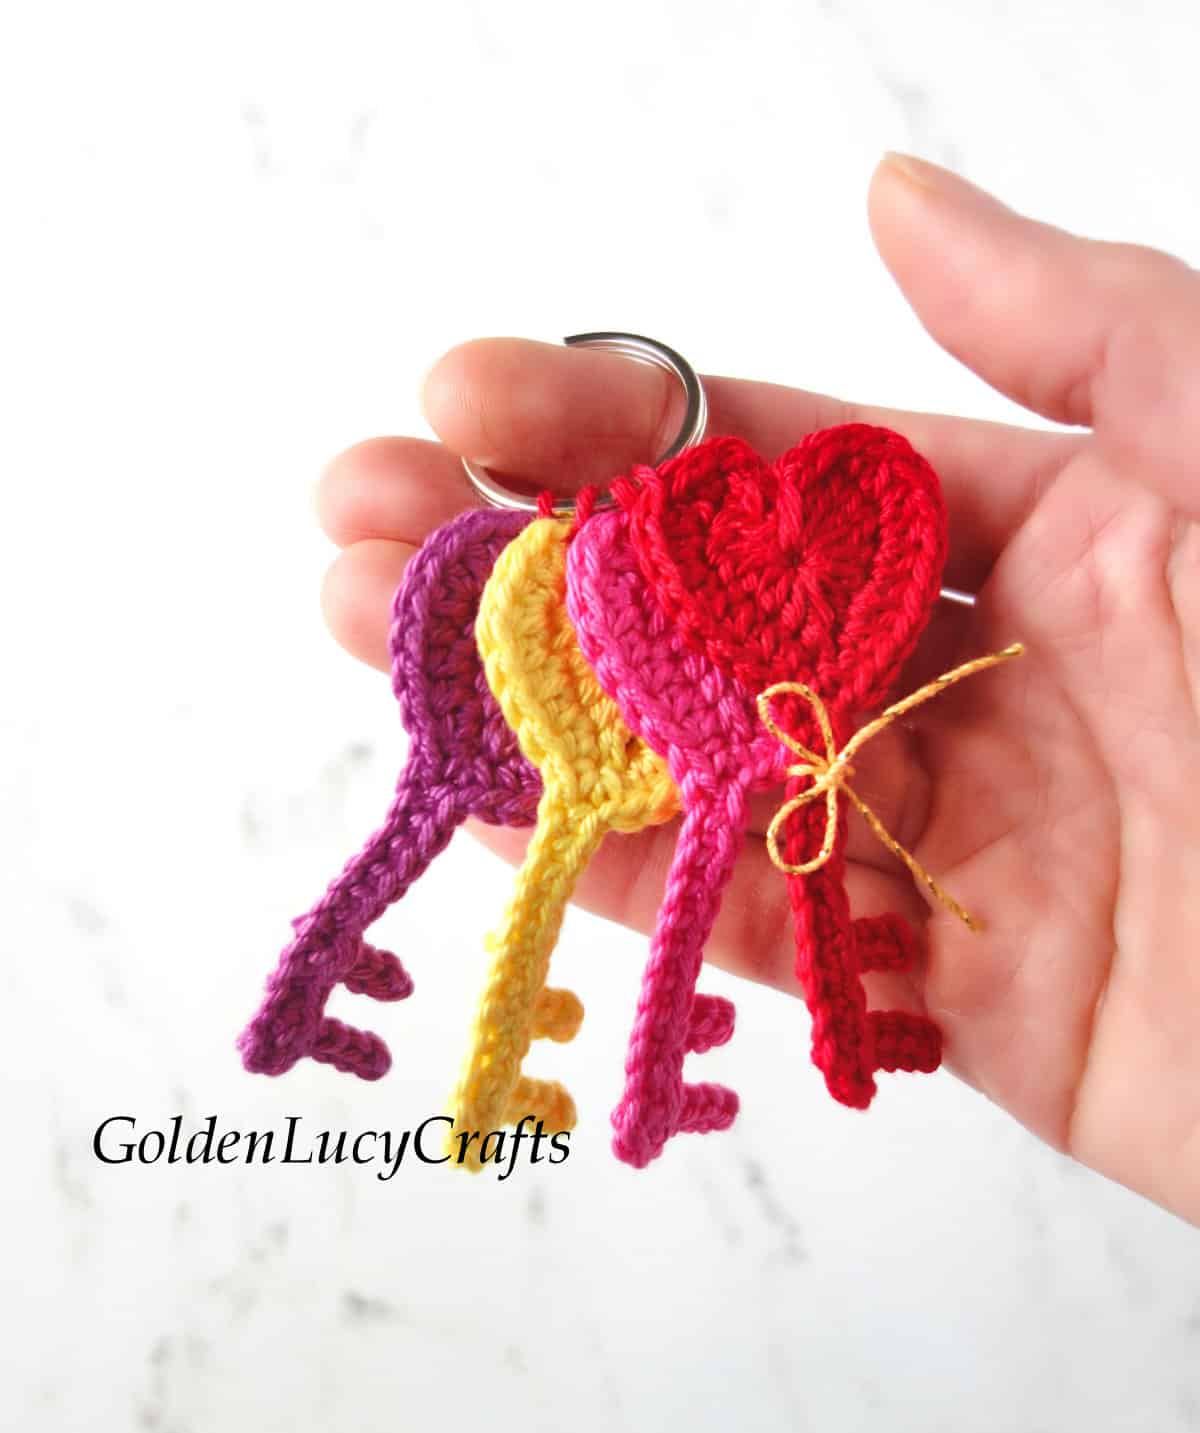 Bunch of multi-colored crochet heart keys.